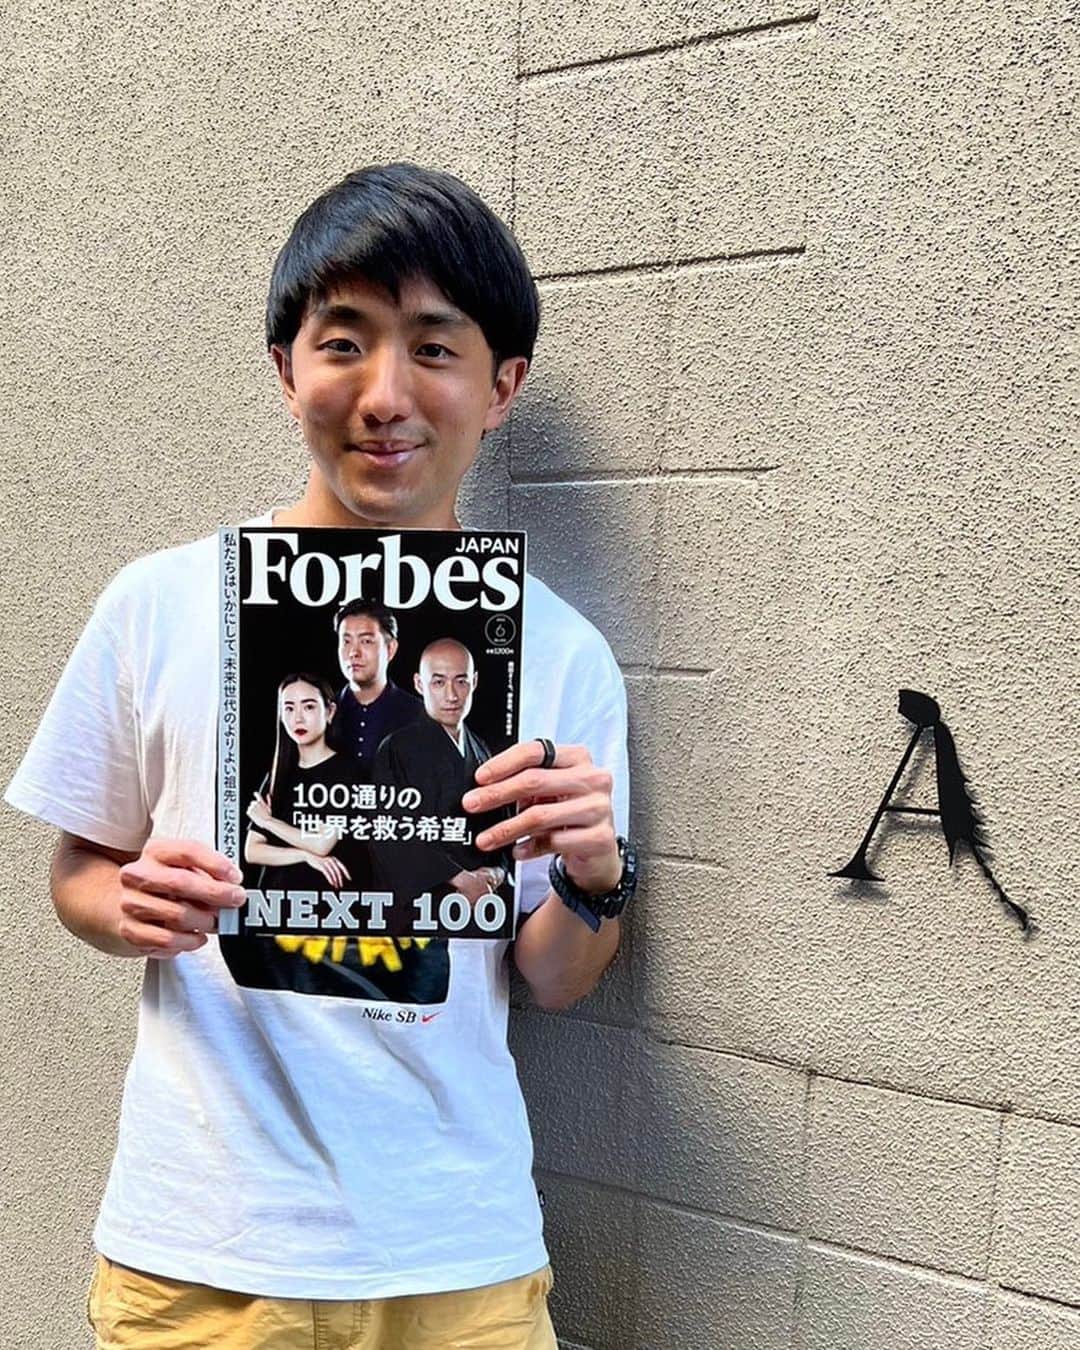 篠原祐太のインスタグラム：「Forbes JAPAN「世界を救う希望100人」に選出いただきました。ありがとうございます。  「日の目を浴びない生き物たちの魅力を伝えたい」「おいしさの選択肢を増やしたい」と思い、続けてきたことが、未来への選択肢として評価いただけたことが素直に嬉しいです。  思い返せば、昆虫食の活動を始めて9年になりますが、確かな手応えを感じる反面、先日のSNSでの昆虫食の大炎上や世論をみていると、まだまだ目指している世界とは程遠く、高い壁の存在を感じざるを得ない今日この頃です。  ただ、大好きな仲間たちと、大好きな挑戦に取り組み、思う存分表現できている今の環境はありがたく、幸せなことなので、この喜びを噛み締めてより一層頑張ってまいります。  皆さん、いつもありがとうございます。これからも、一緒に地球を冒険し続けられたら、僕は幸せです。」